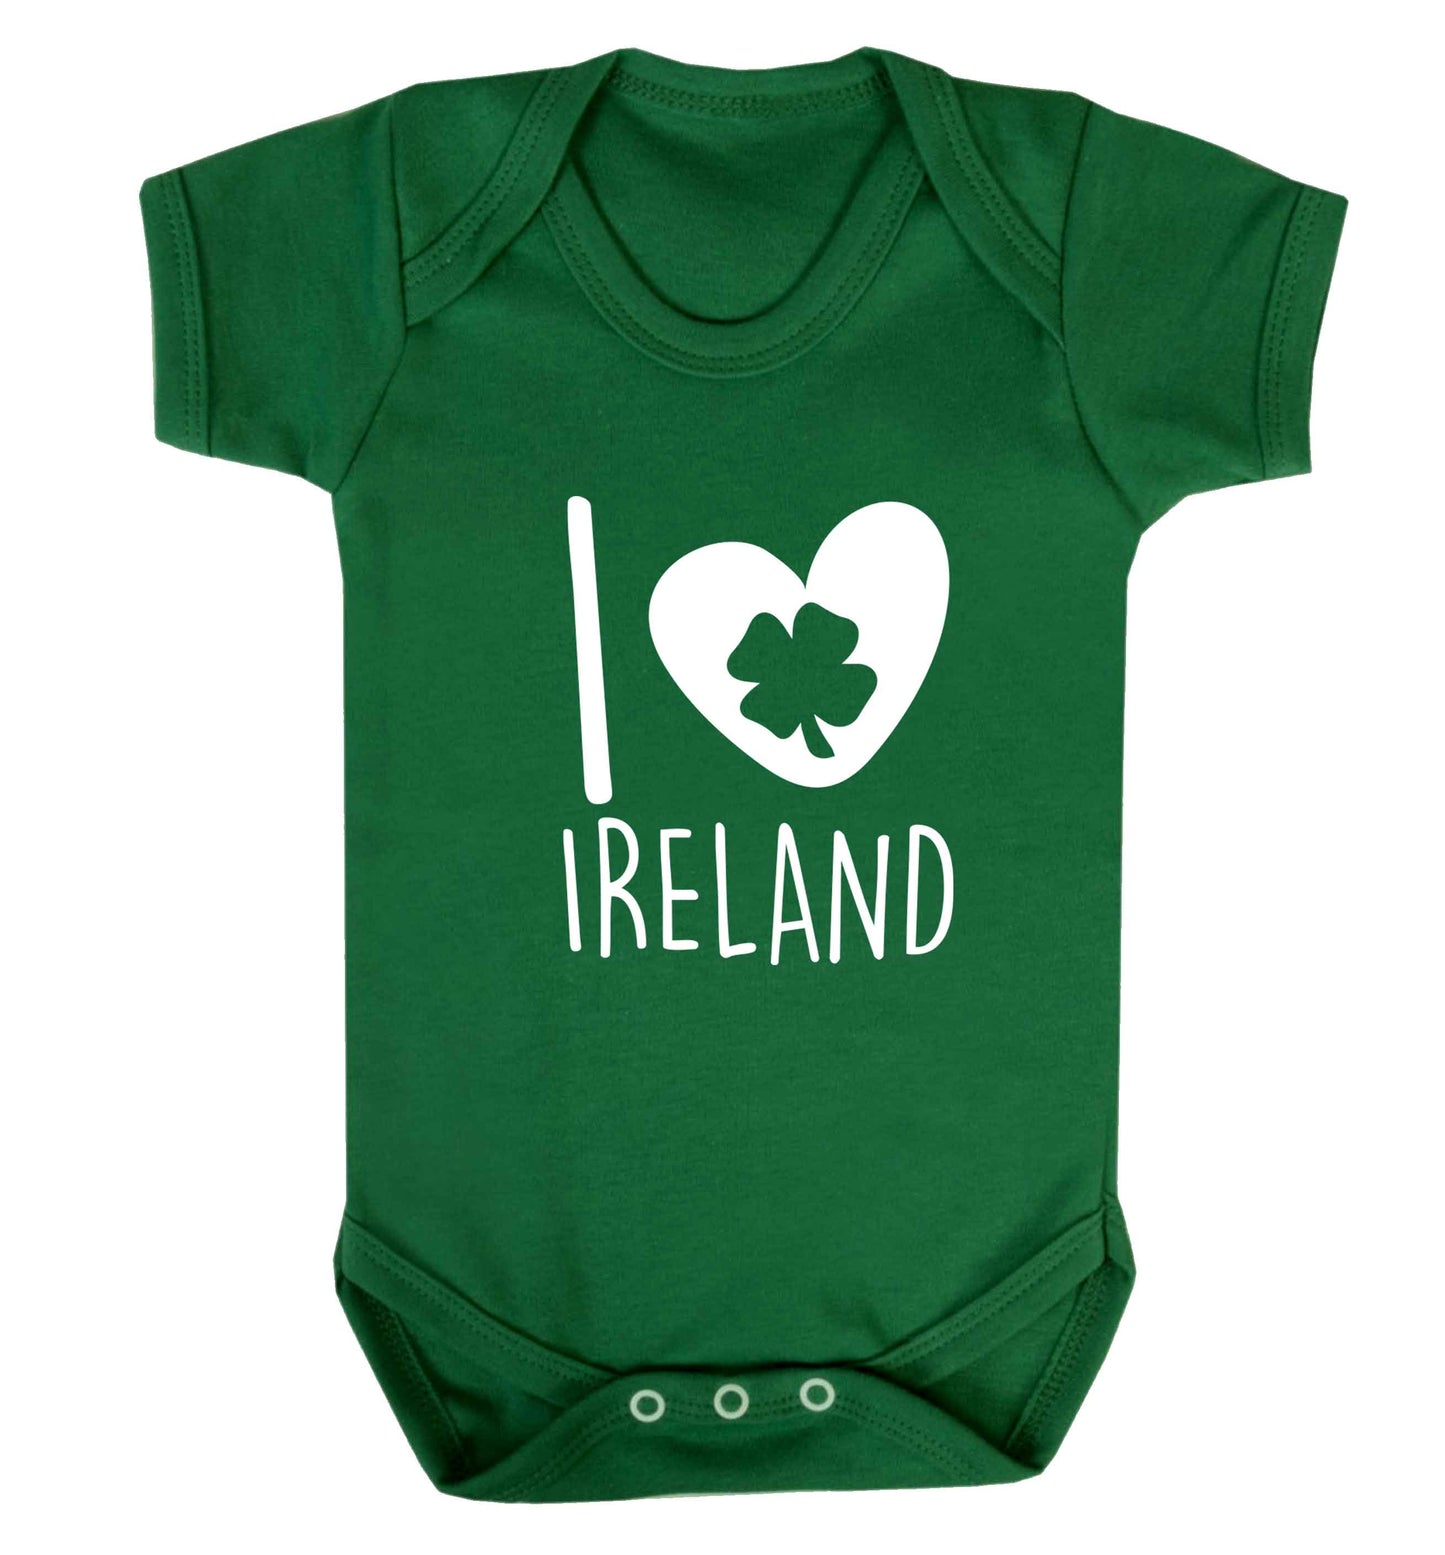 I love Ireland baby vest green 18-24 months